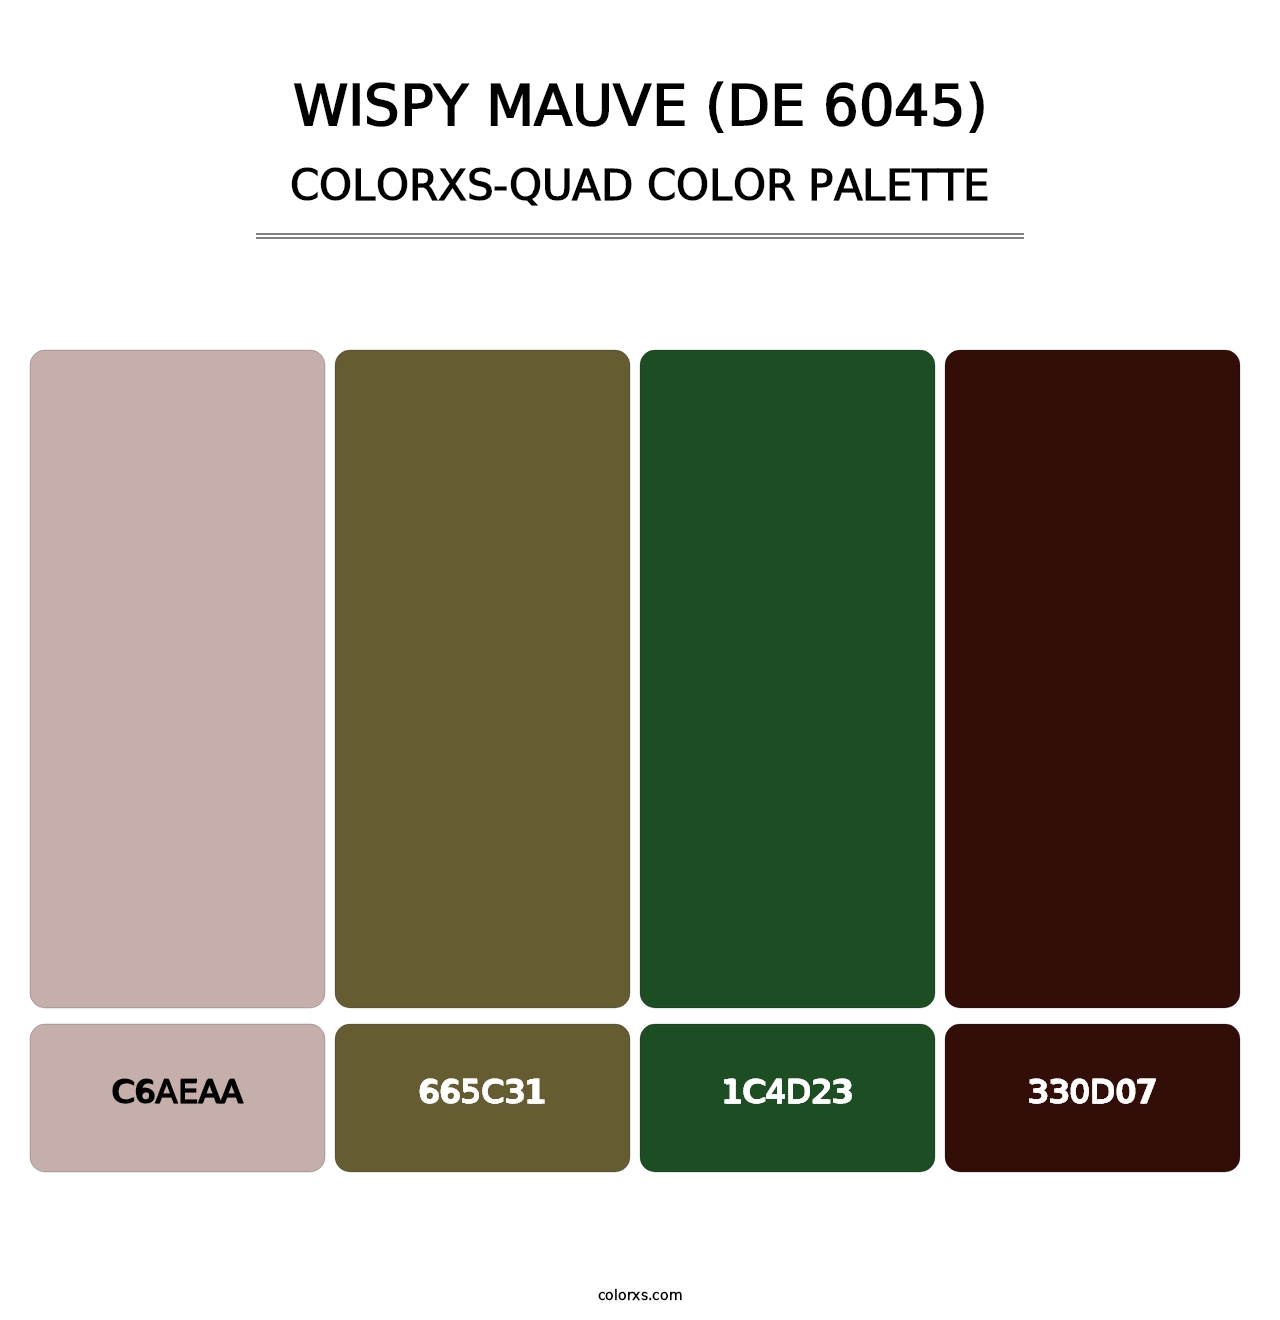 Wispy Mauve (DE 6045) - Colorxs Quad Palette